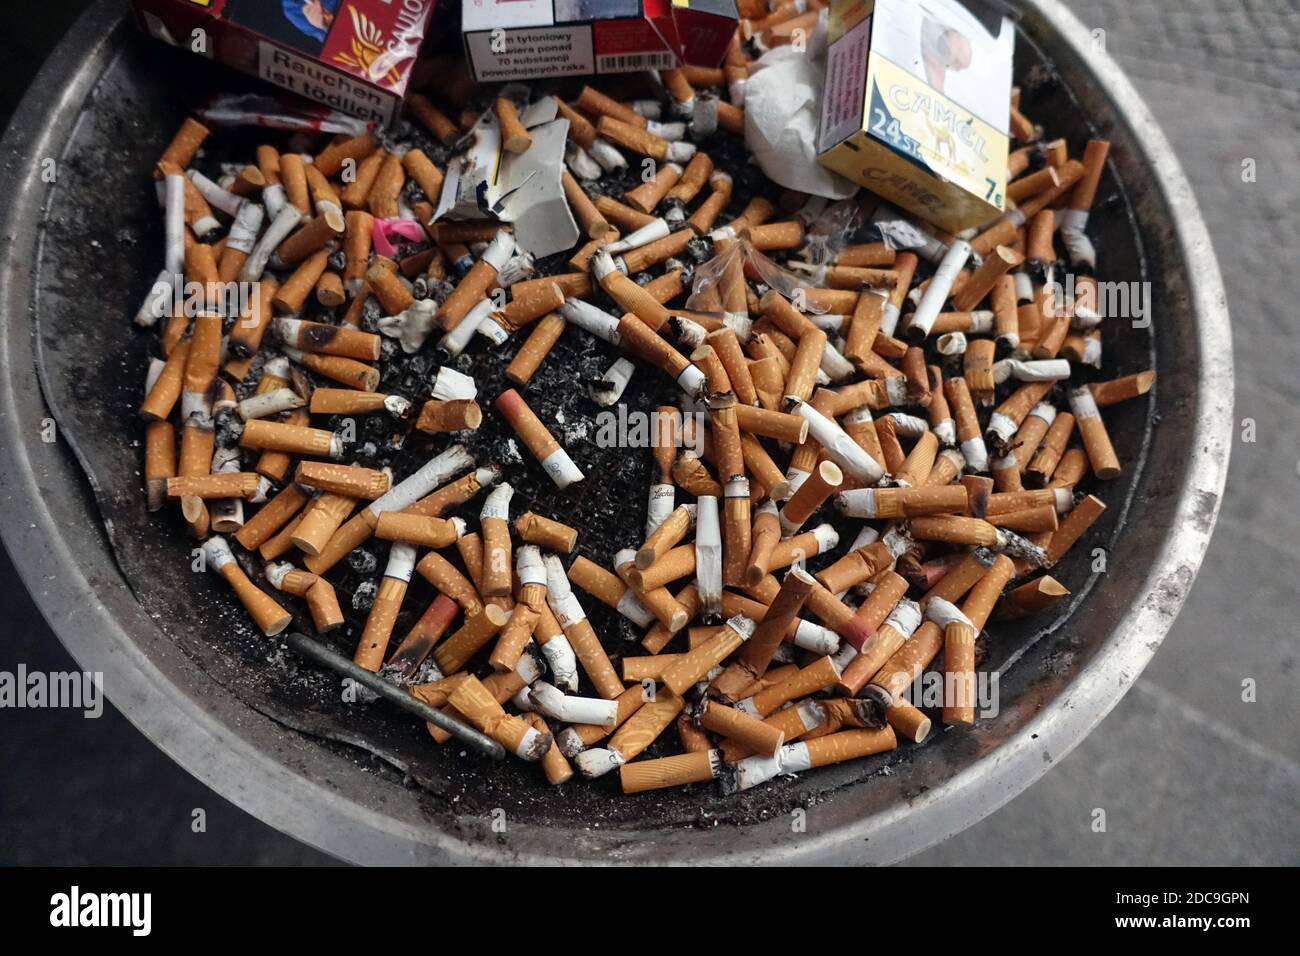 26.02.2019, Berlín, Alemania - colillas de cigarrillos y paquetes de cigarrillos vacíos en un cenicero. 00S190226D240CAROEX.JPG [VERSIÓN MODELO: NO APLICABL Foto de stock